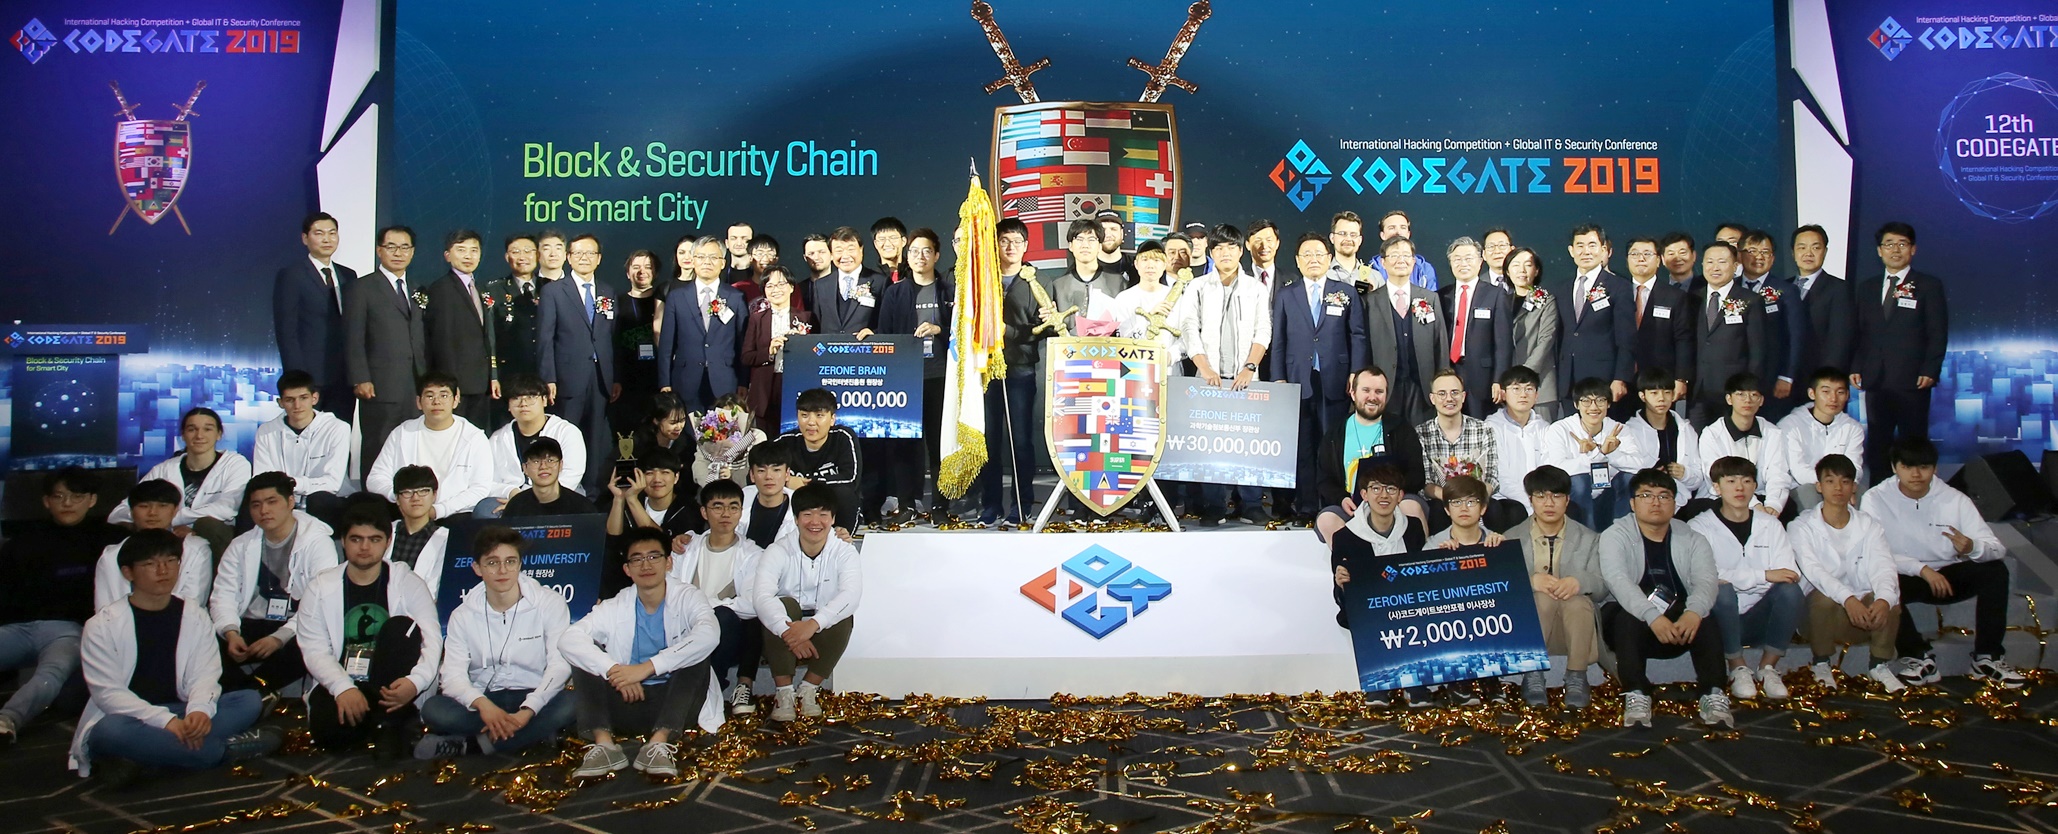 27일 오후 서울 코엑스 그랜드볼룸에서 '코드게이트 2019 국제해킹방어대회' 수상자들이 단체사진을 촬영하고 있다. <사진=과학기술정보통신부>